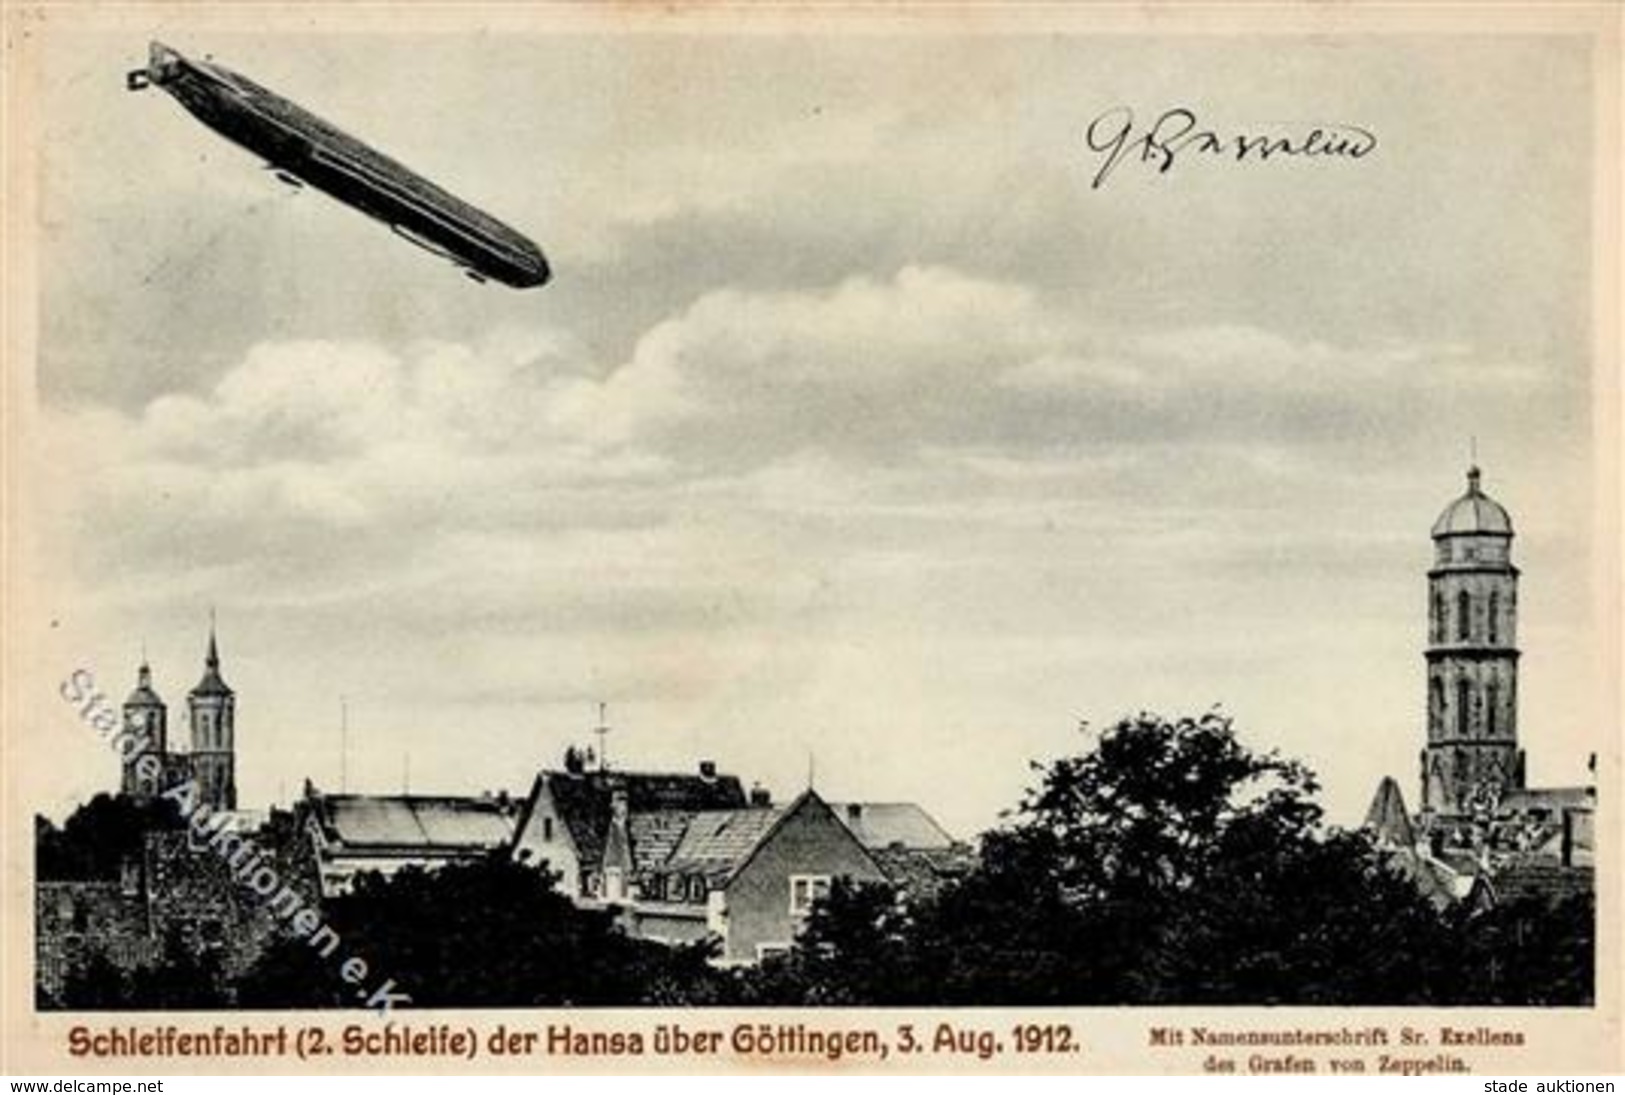 Göttingen (3400) Schleifenfahrt Zeppelin Hansa 3.8.1912 Unterschrift Graf Von Zeppelin  1914 II (Stauchung) Dirigeable - Airships